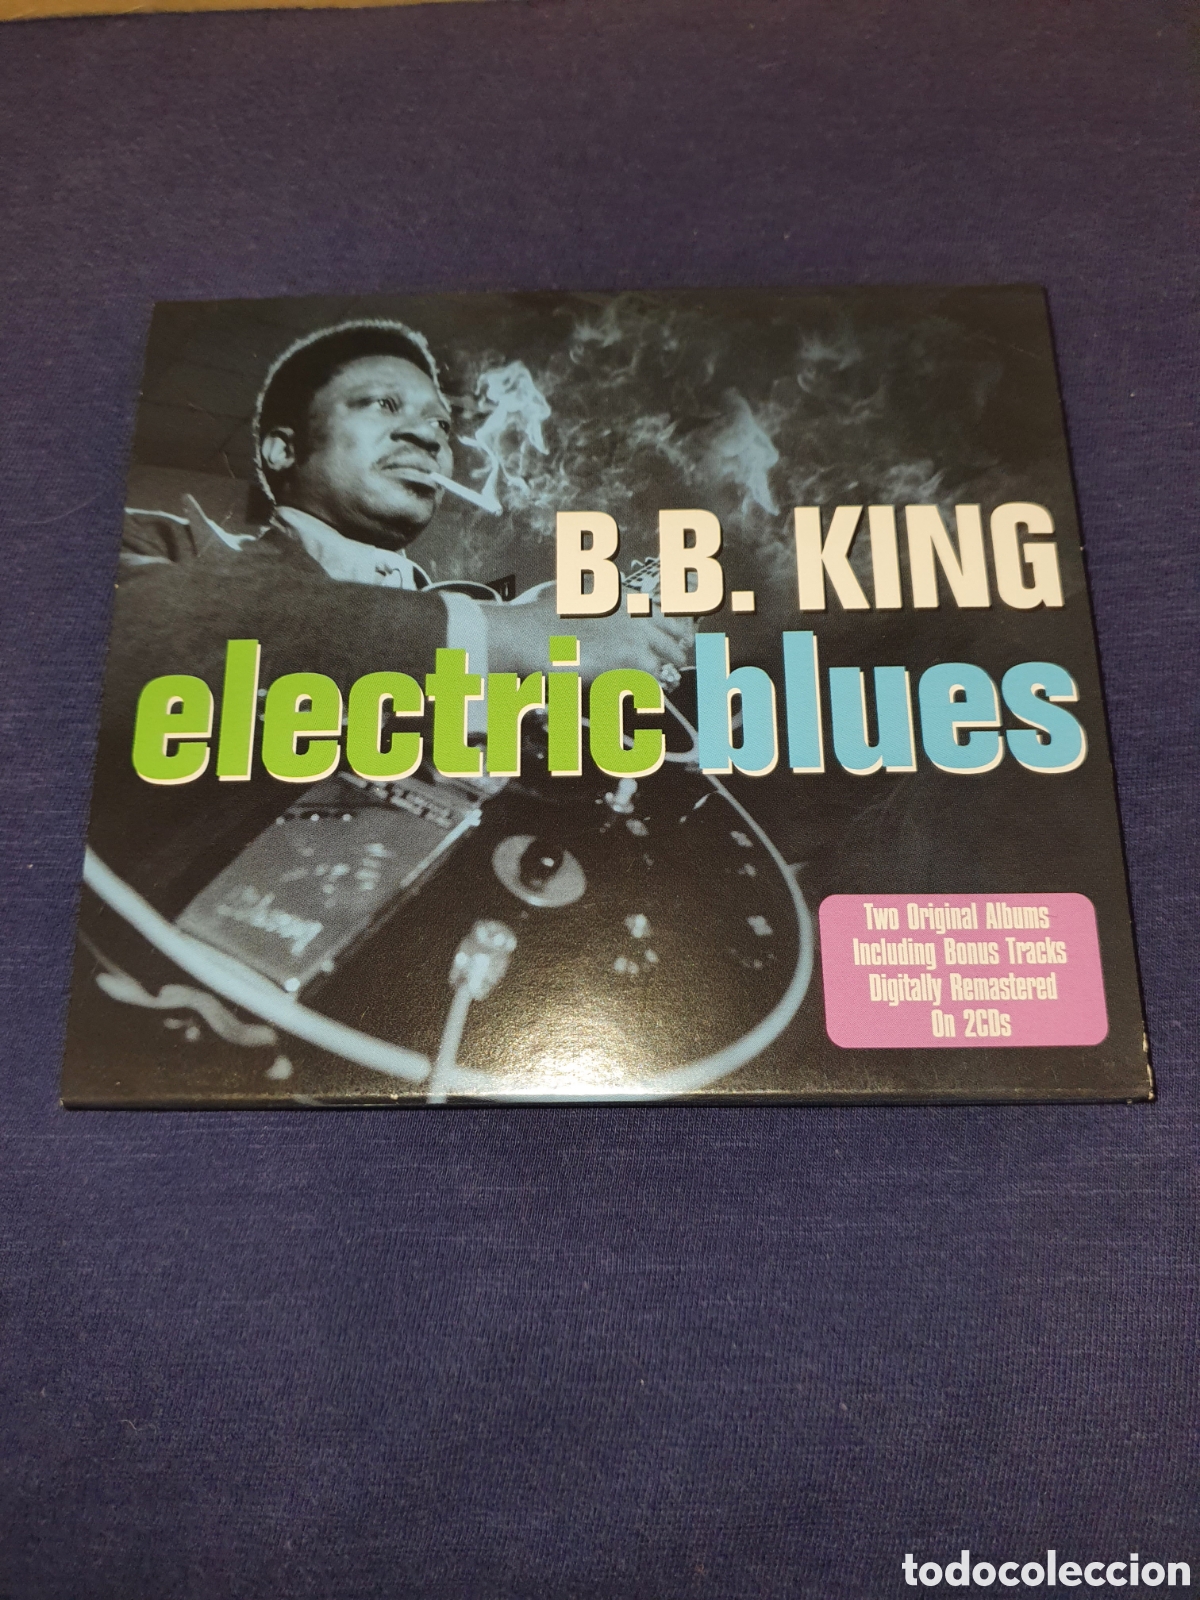 electric　en　venta　king　Compra　blues　todocoleccion